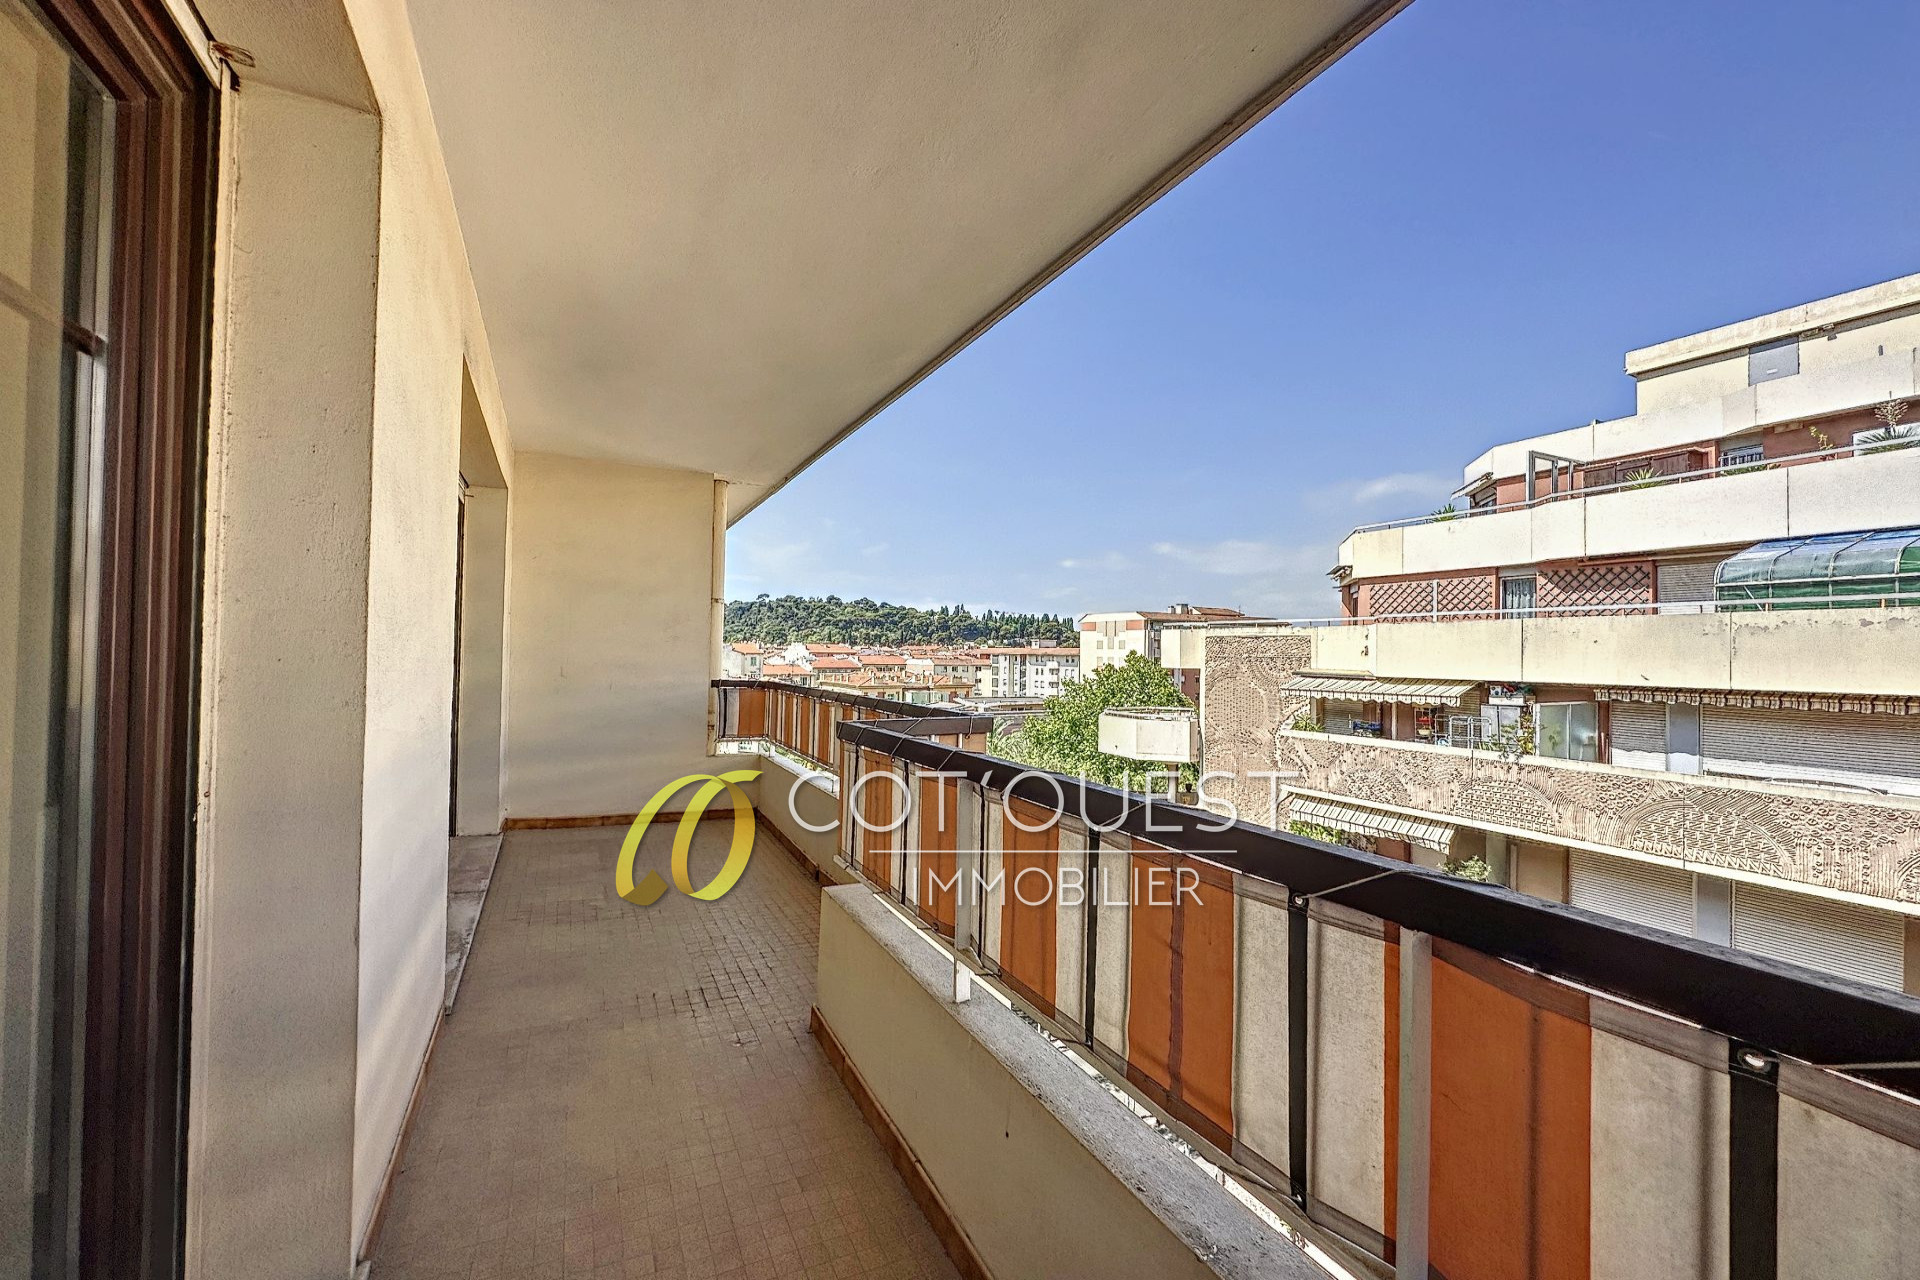 Vente Appartement 70m² à Nice (06000) - Cot'Ouest Immobilier